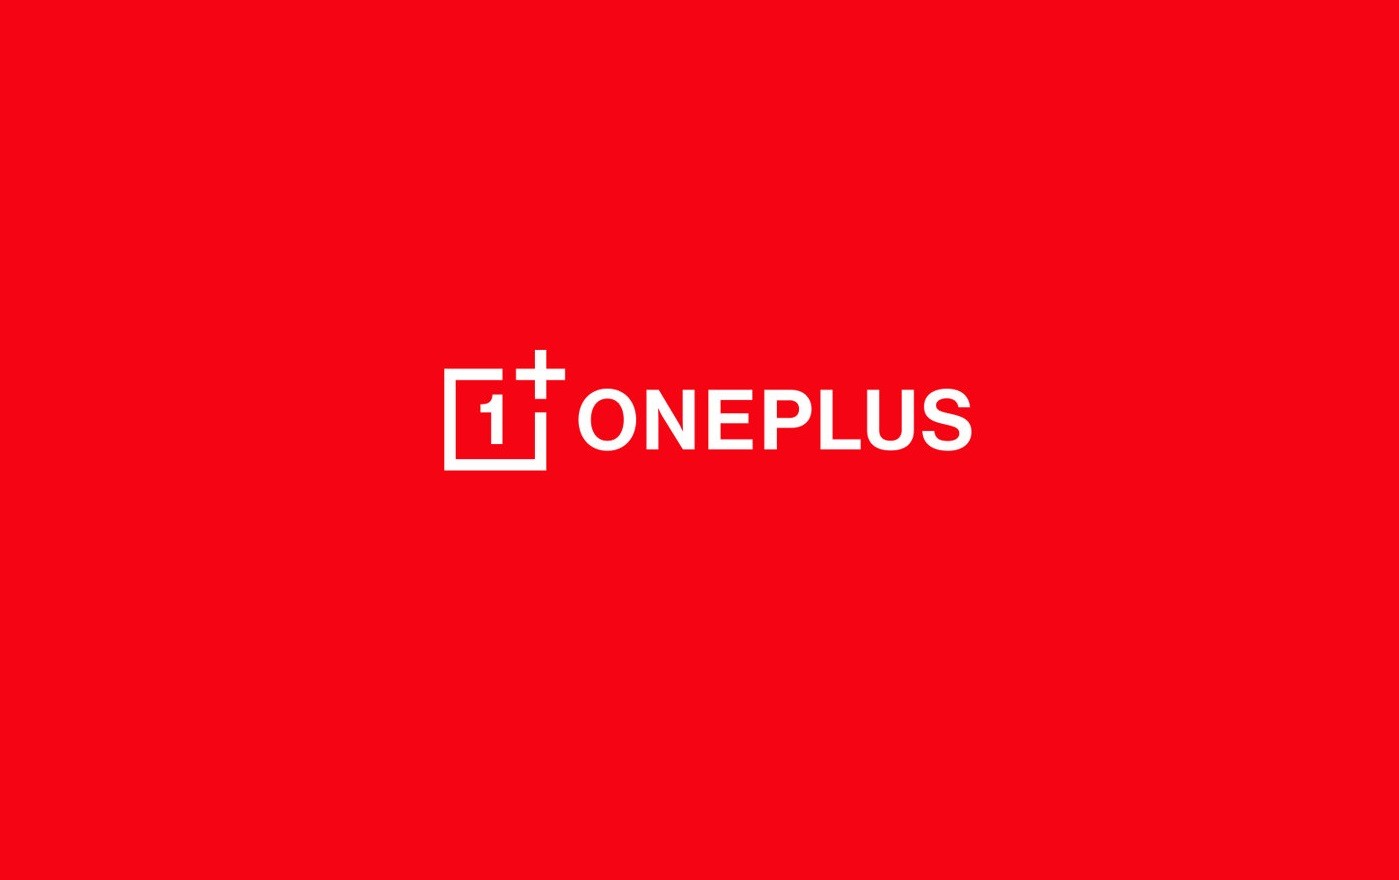 OnePlus pieghevole nel 2023 - 130522 www.computermagazine.it